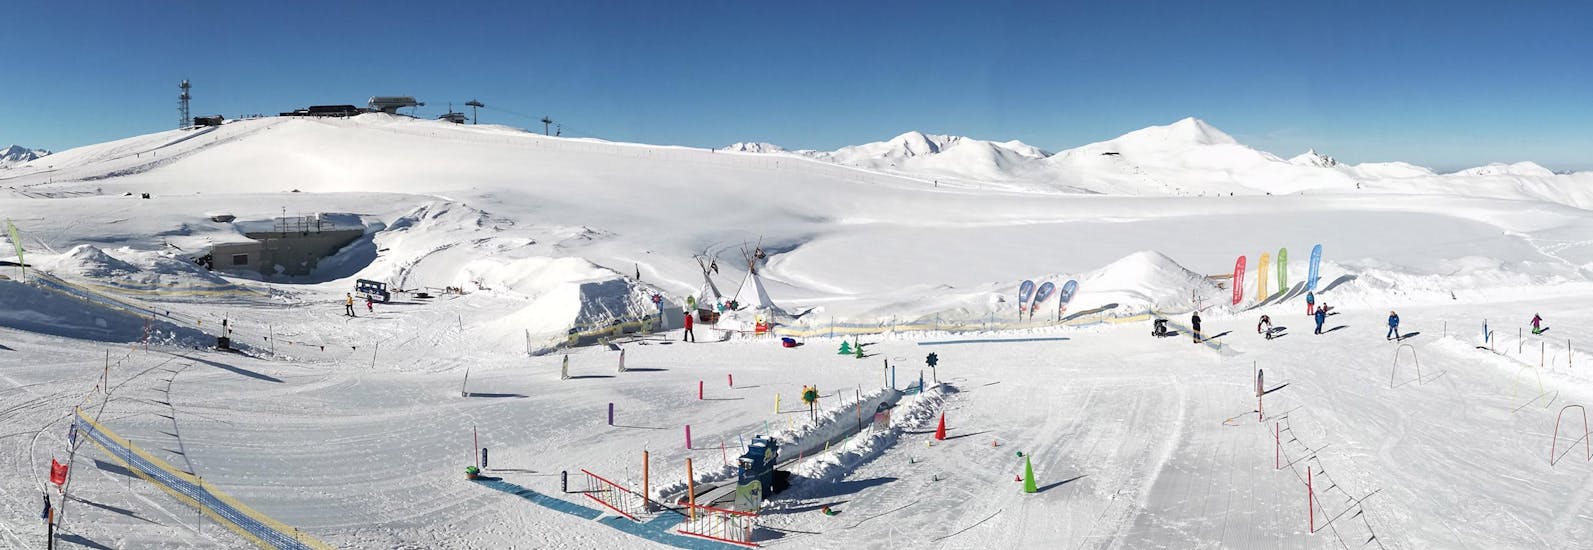 Eine wunderschöne Pistenlandschaft beim halbtägigen Kinder-Skikurs (3-14 J.) für alle Levels mit der Schneesportschule Wildkogel.